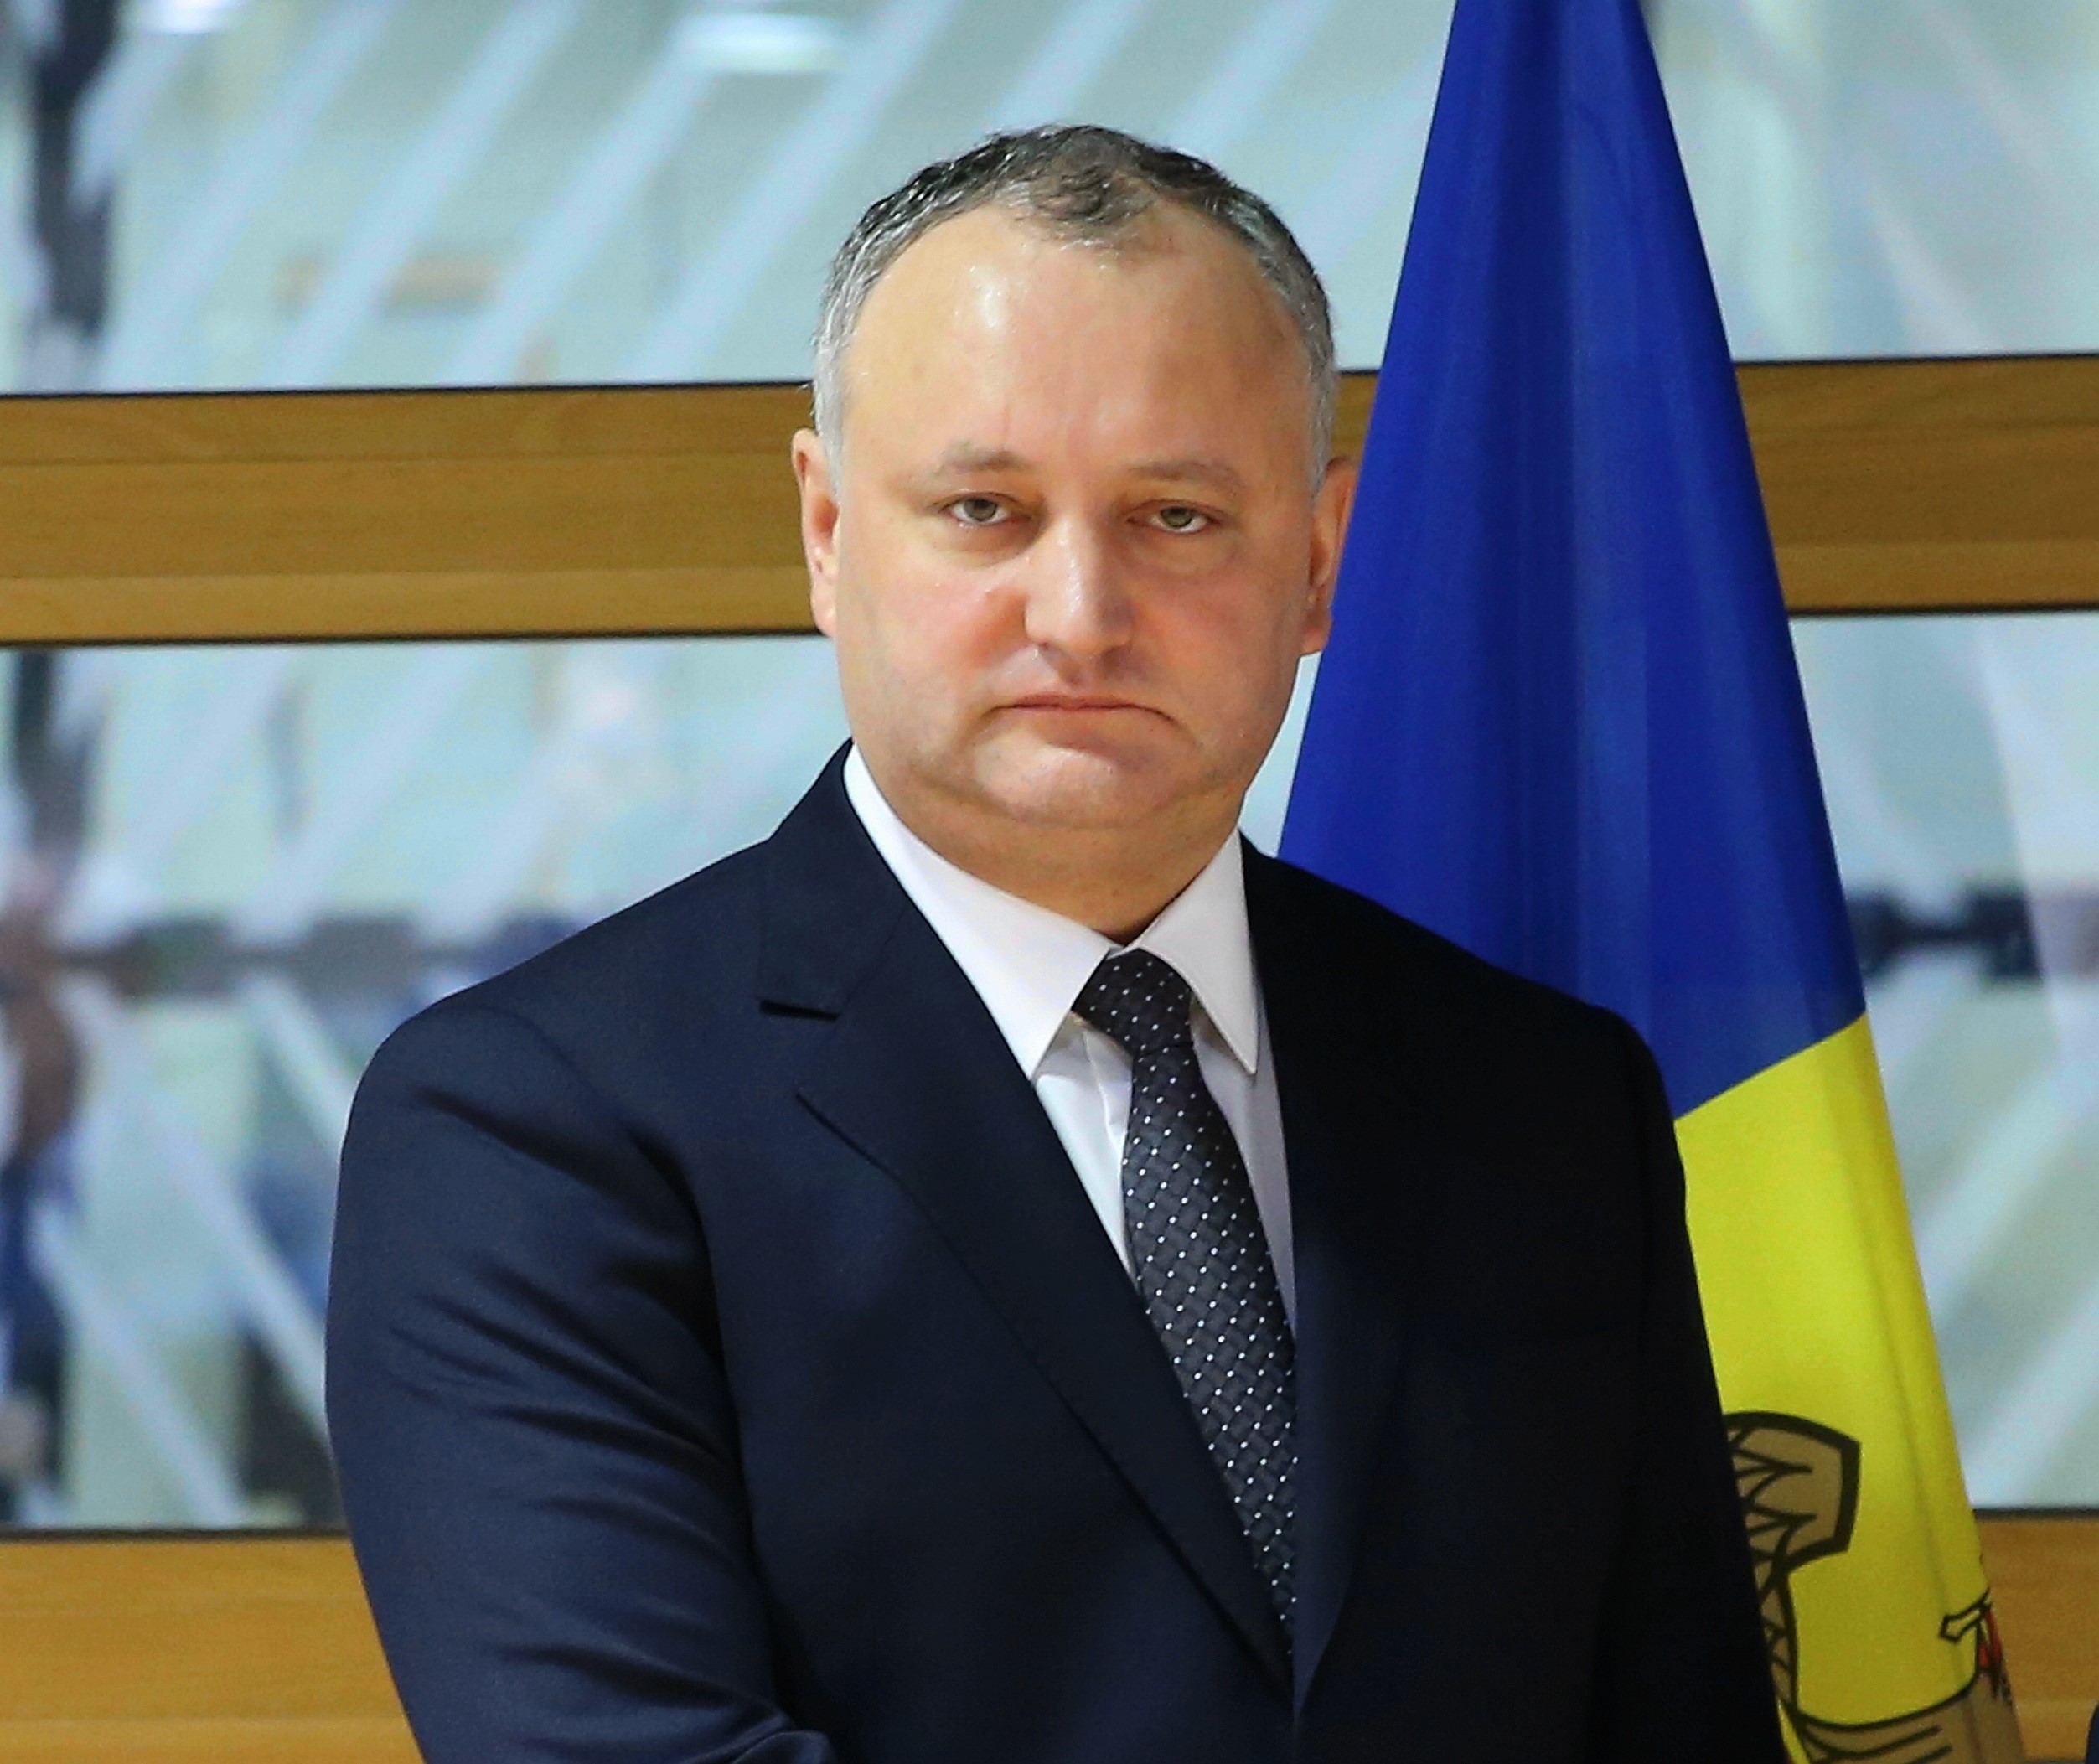 BREAKING: Curtea Constituţională a Republicii Moldova a decis suspendarea temporară a preşedintelui Igor Dodon